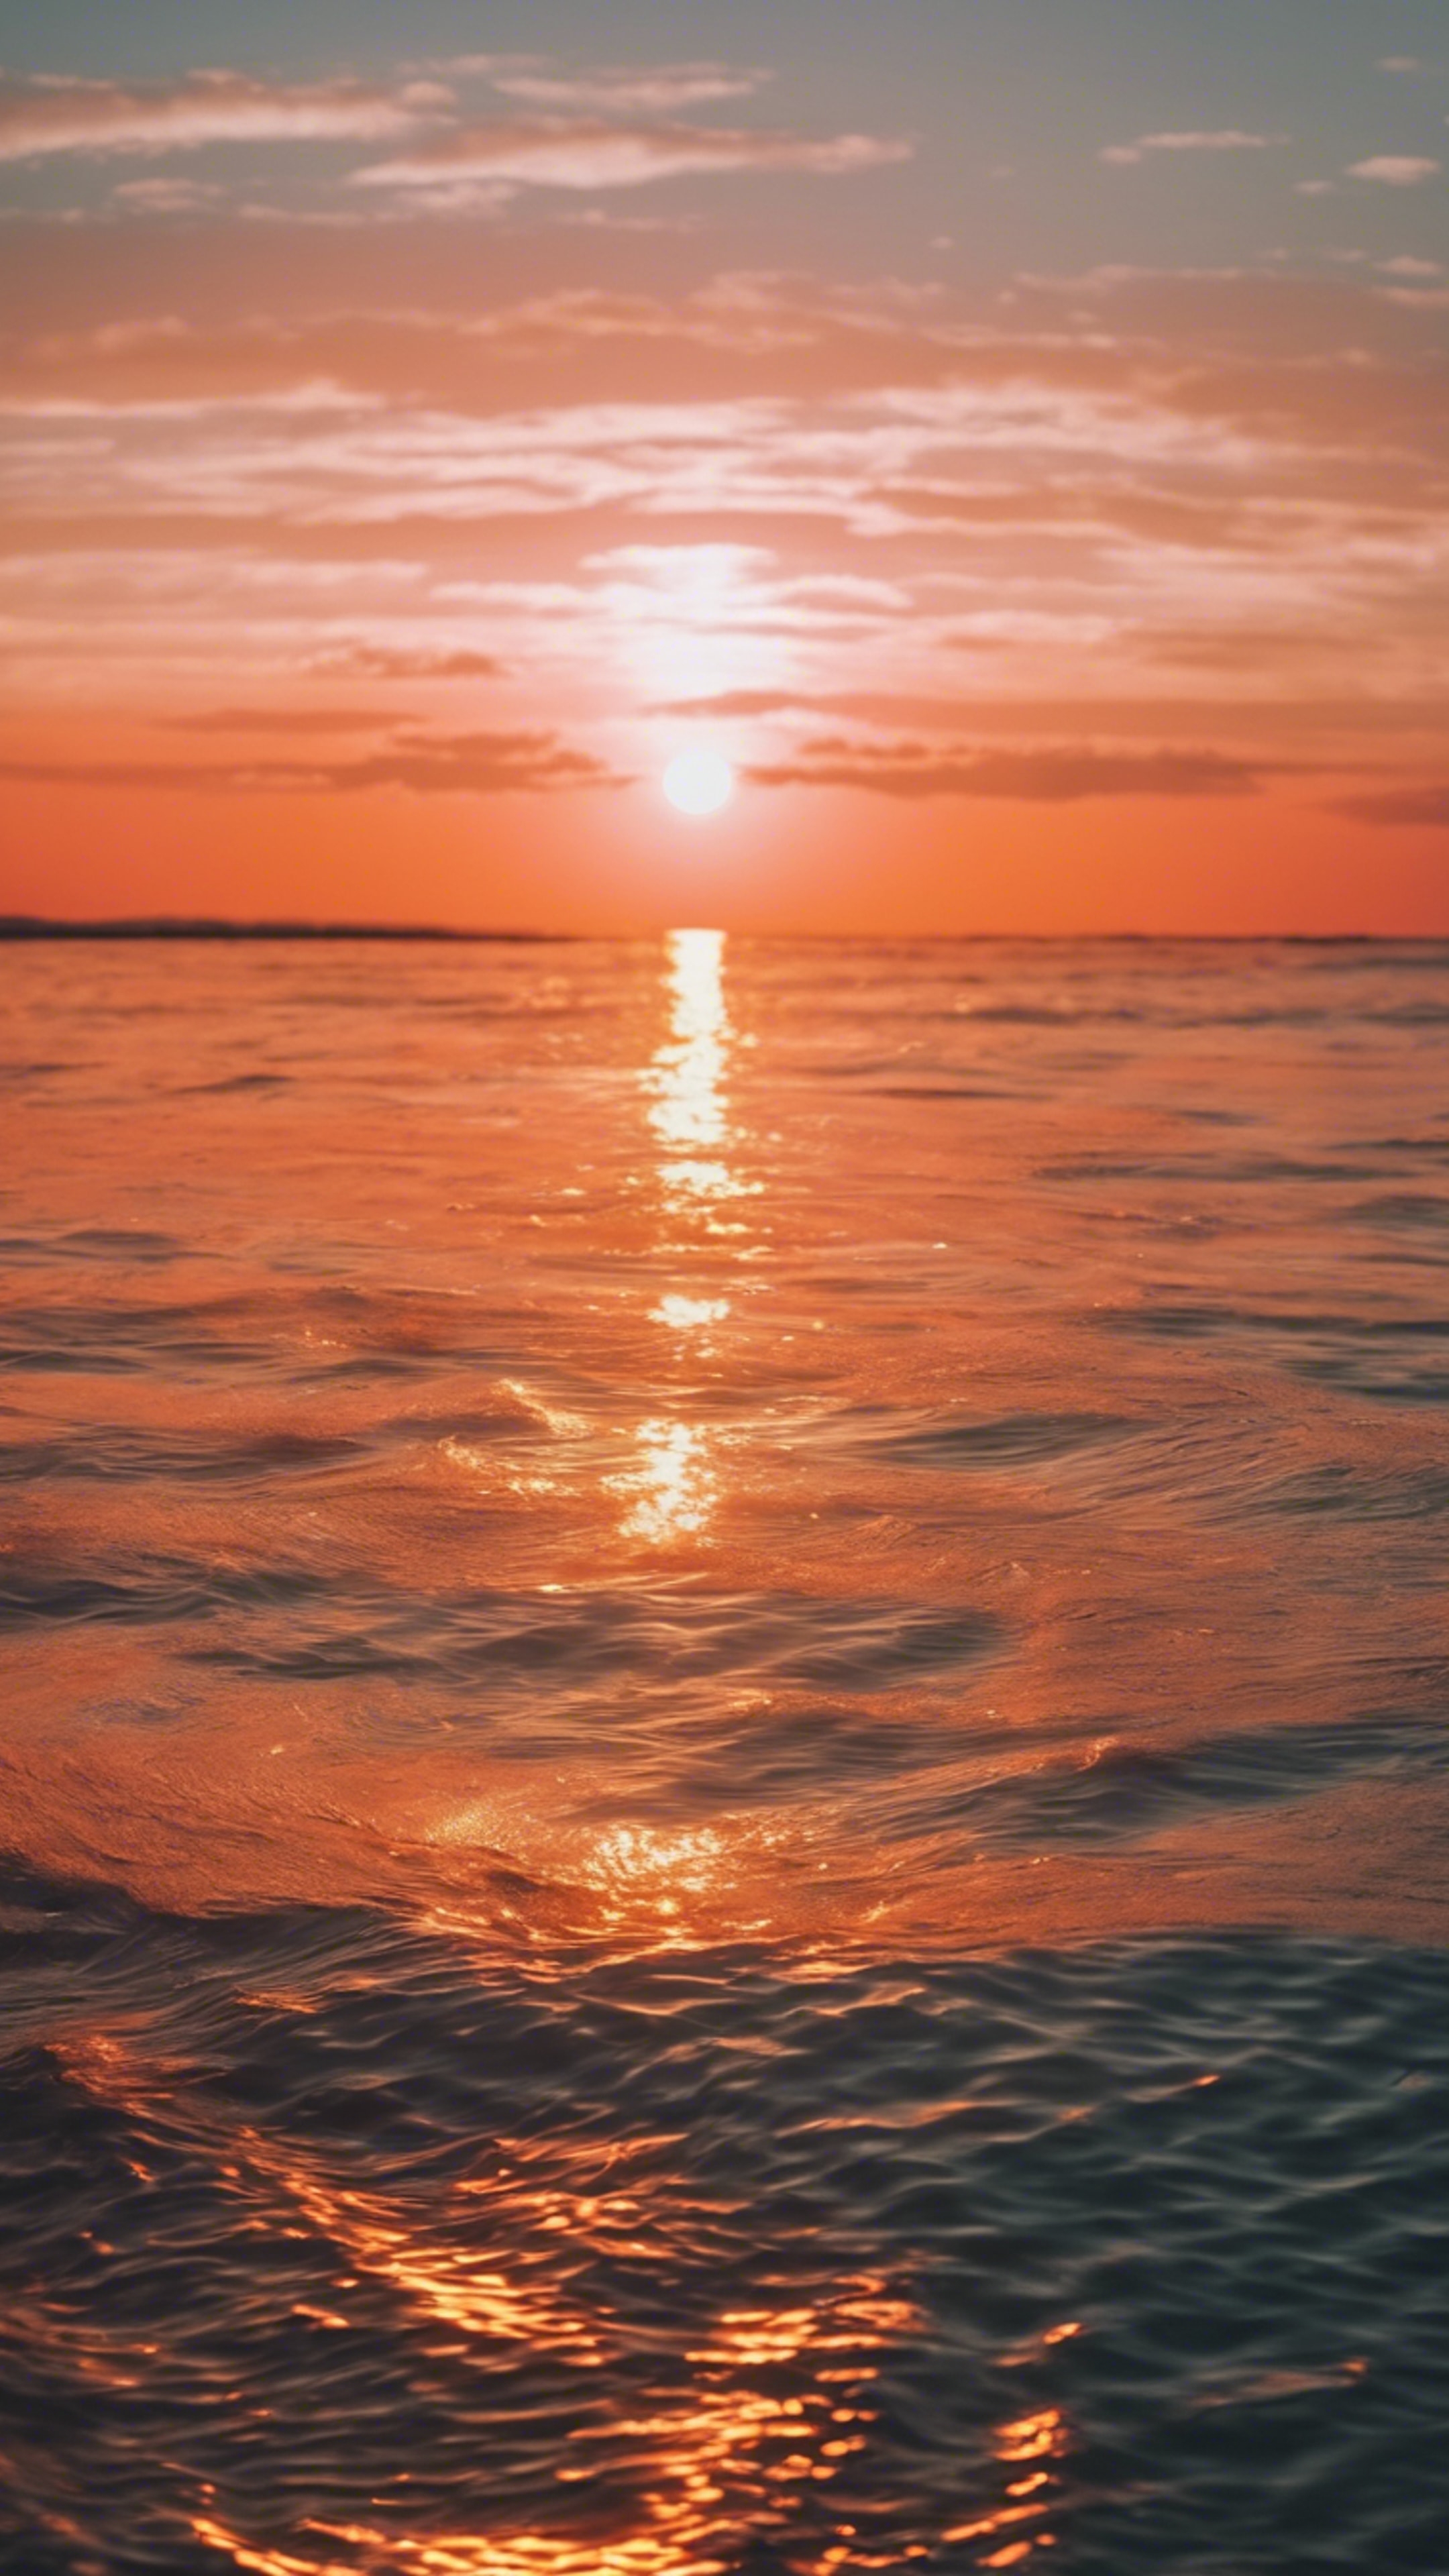 Bright neon orange sun setting over a calm sea. Wallpaper[6f90c626ce0243a7b617]